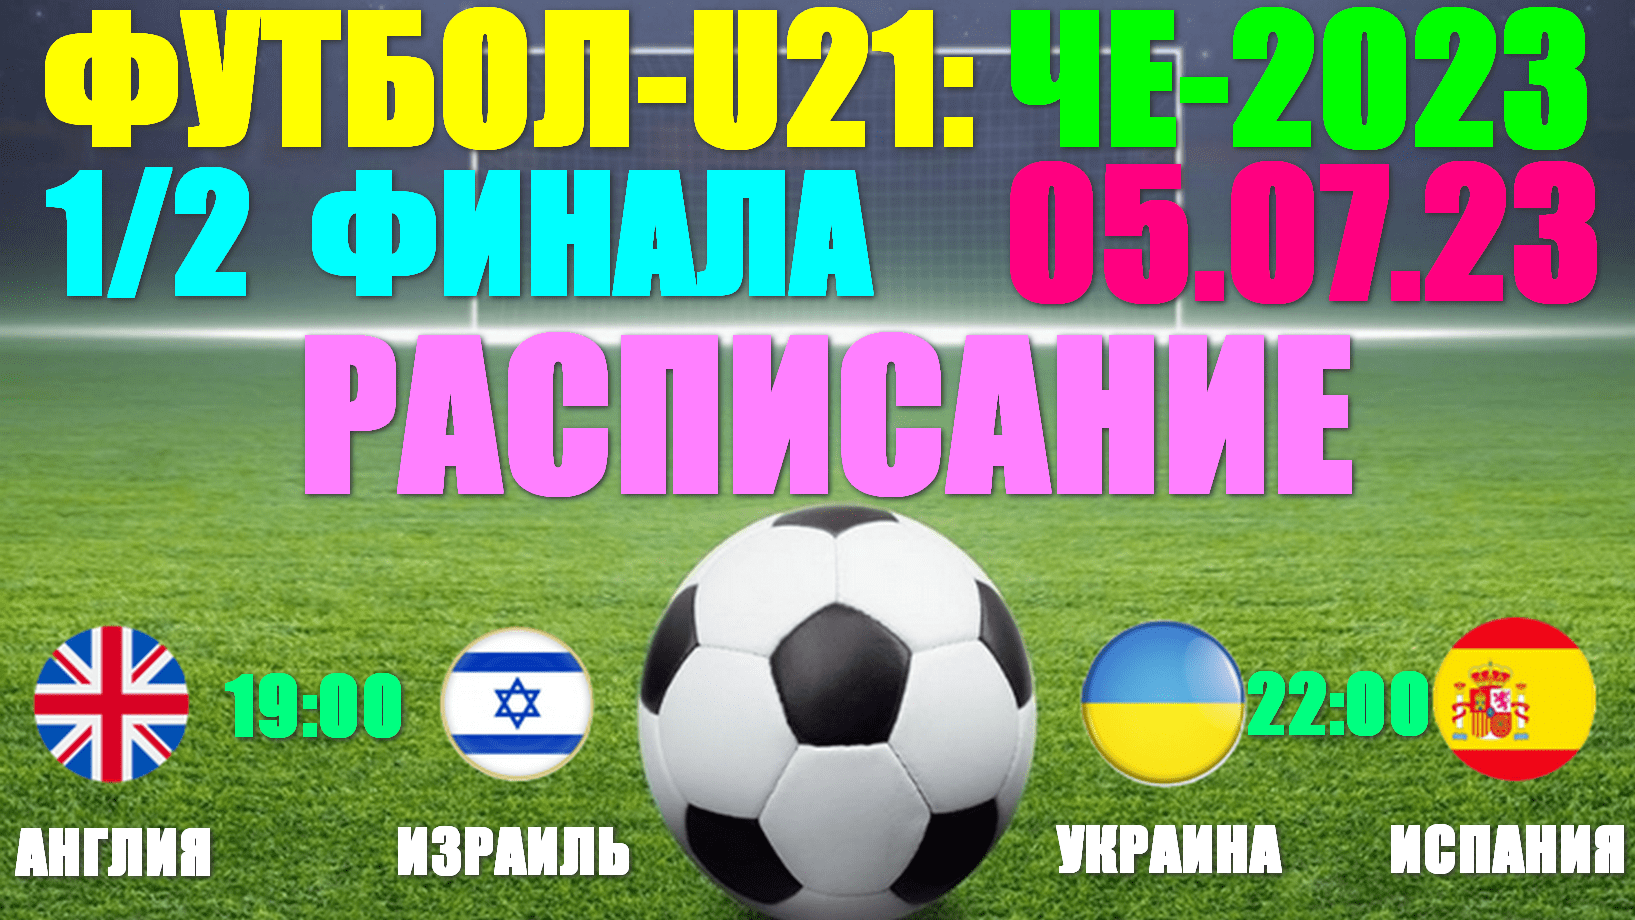 Футбол: U-21 Чемпионат Европы-2023. 1/2 финала:05.07.23. Расписание: Англия-Израиль; Украина-Испания